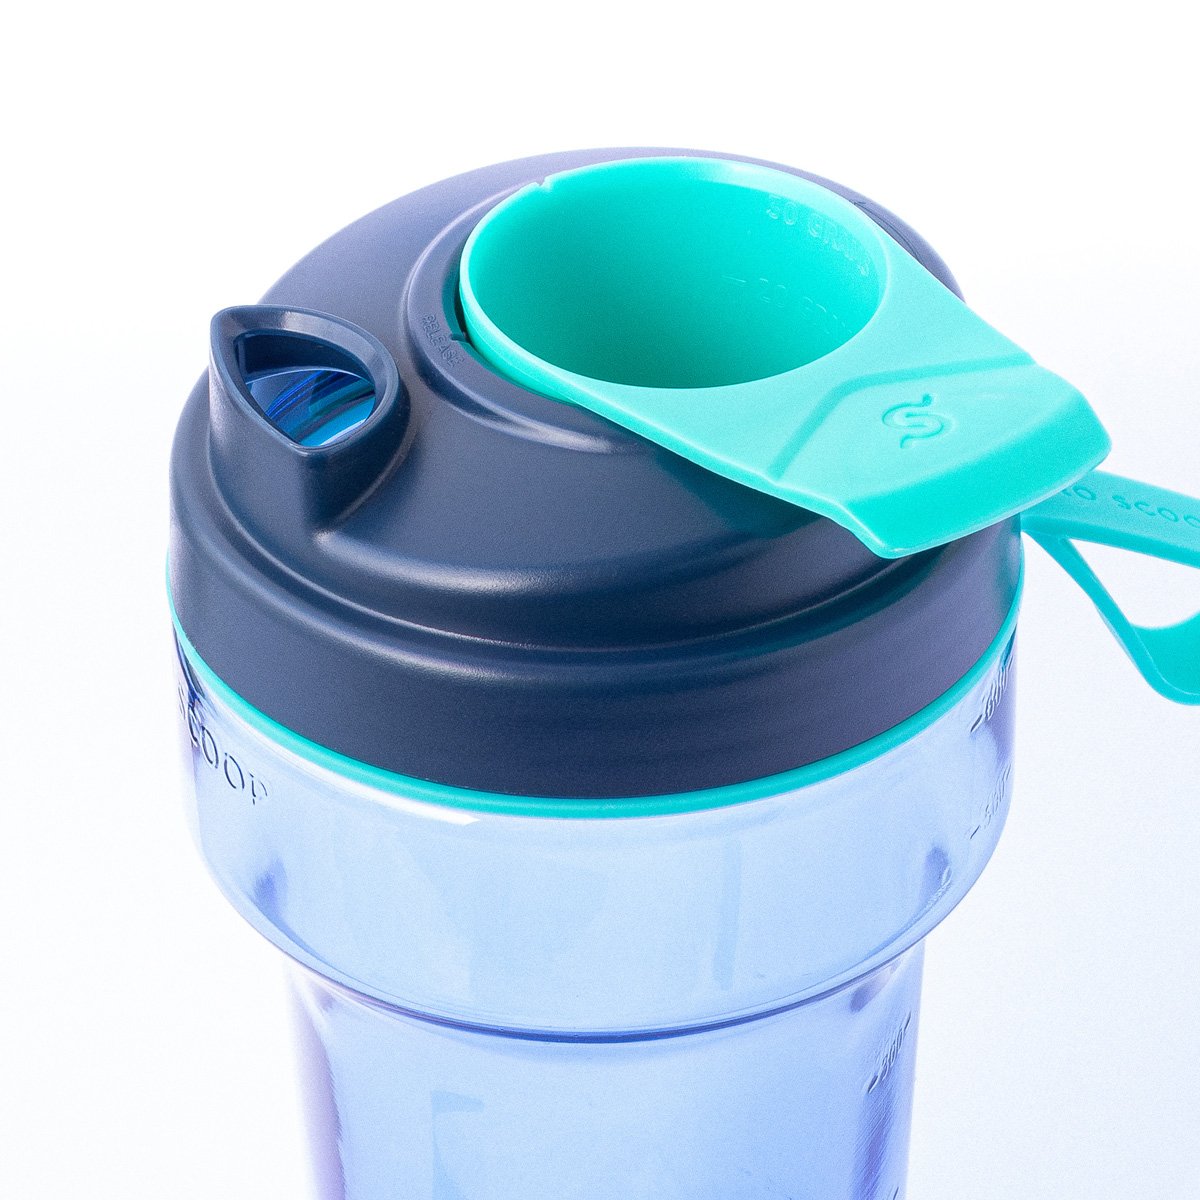 Pro-Scoop-OceanMint-Open-Shaker-Bottle-Shaker-Cup-Protein-Shaker-Blender-Bottle-Supplement.jpg